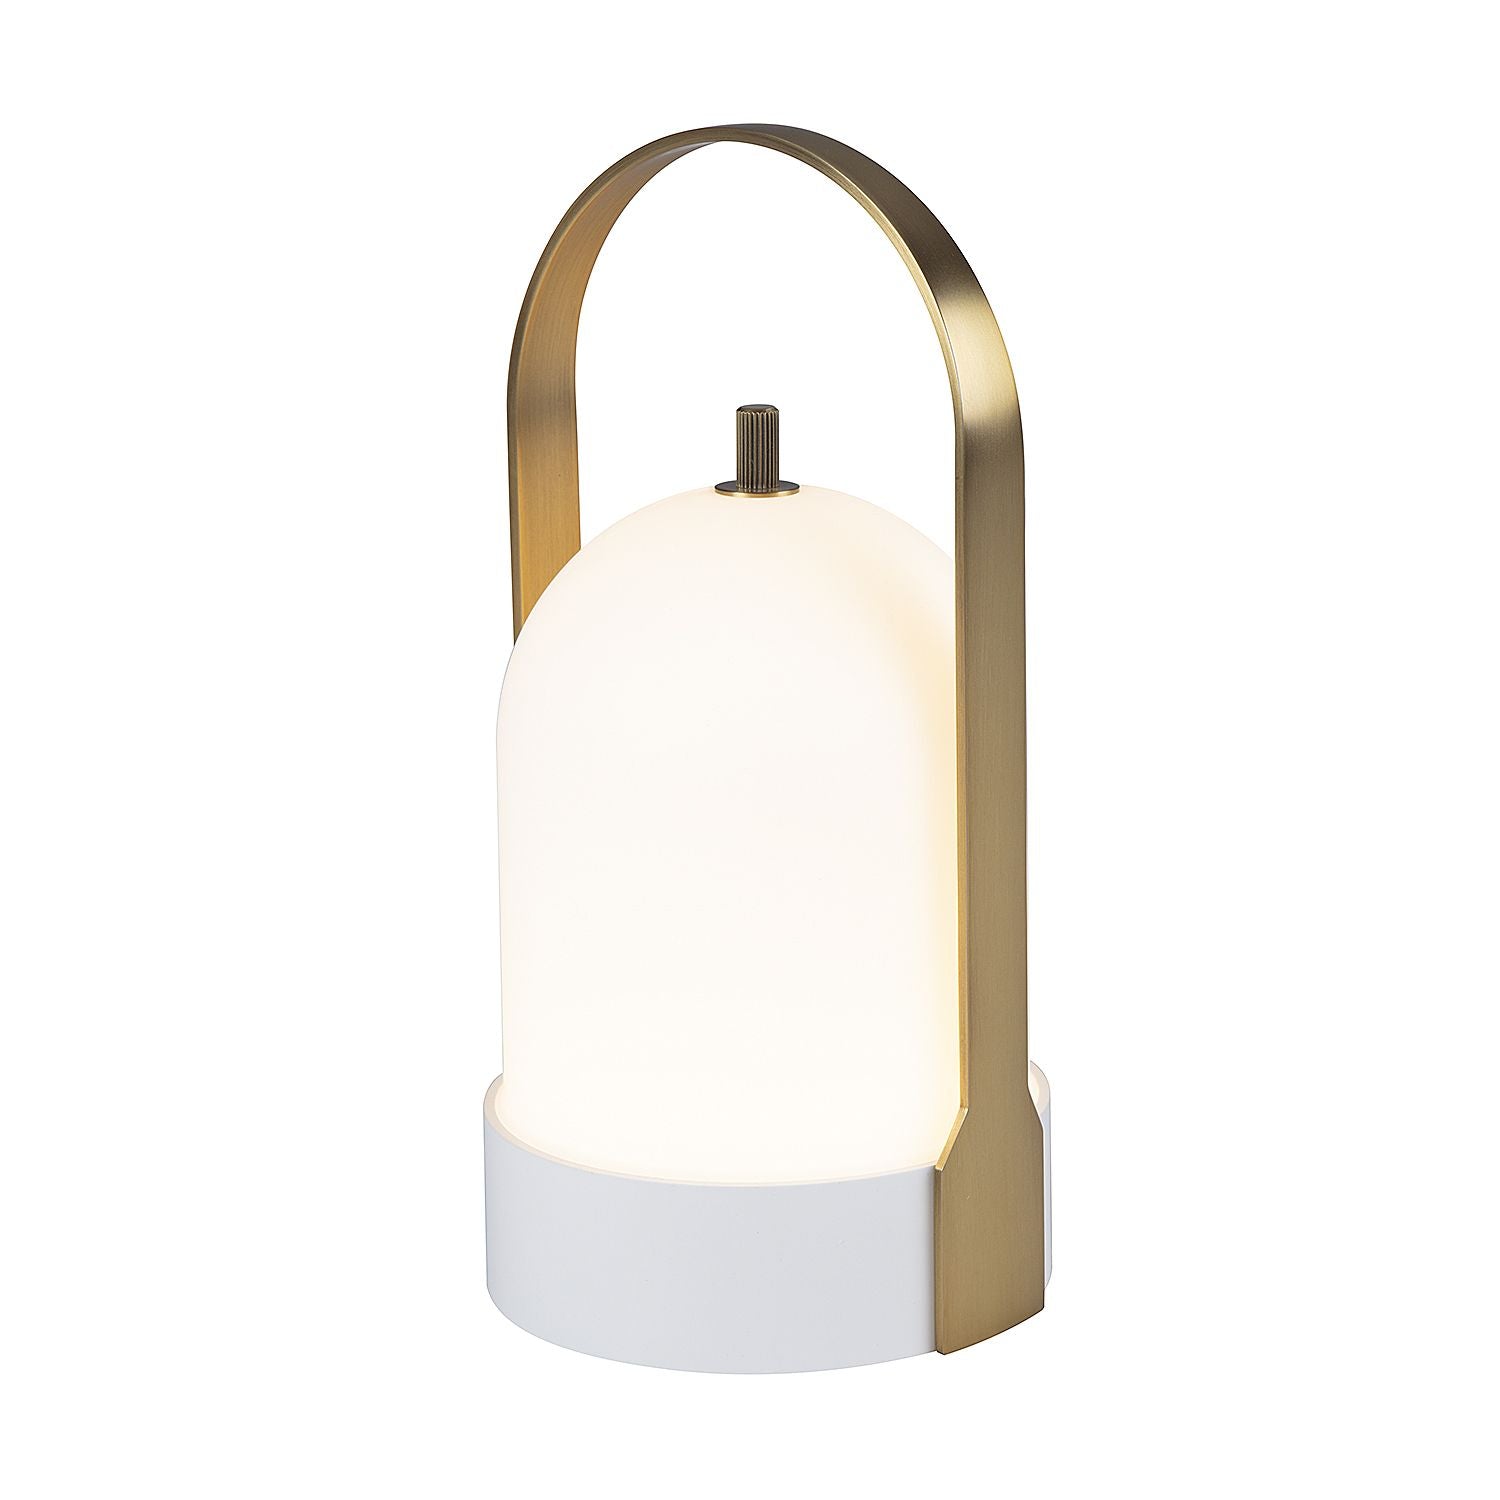 DAWN Lampe sur table Blanc DEL INTÉGRÉ - T141021-Classic White | PAGE ONE